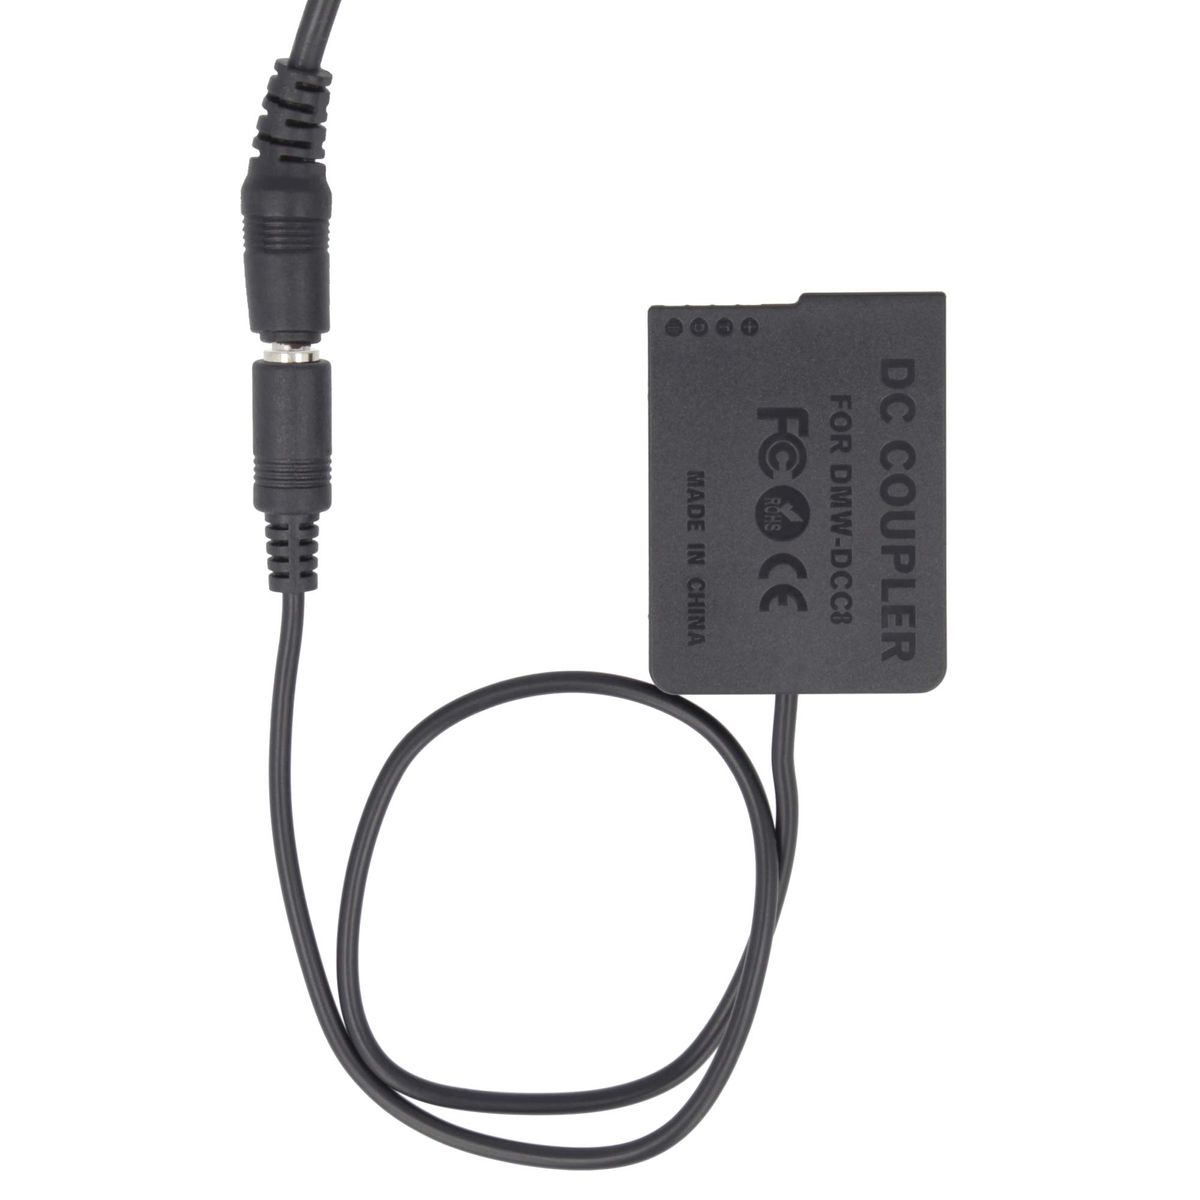 AKKU-KING USB-C Adapter Ladegerät Panasonic, DCC8 Kuppler Angabe kompatibel Panasonic mit + keine